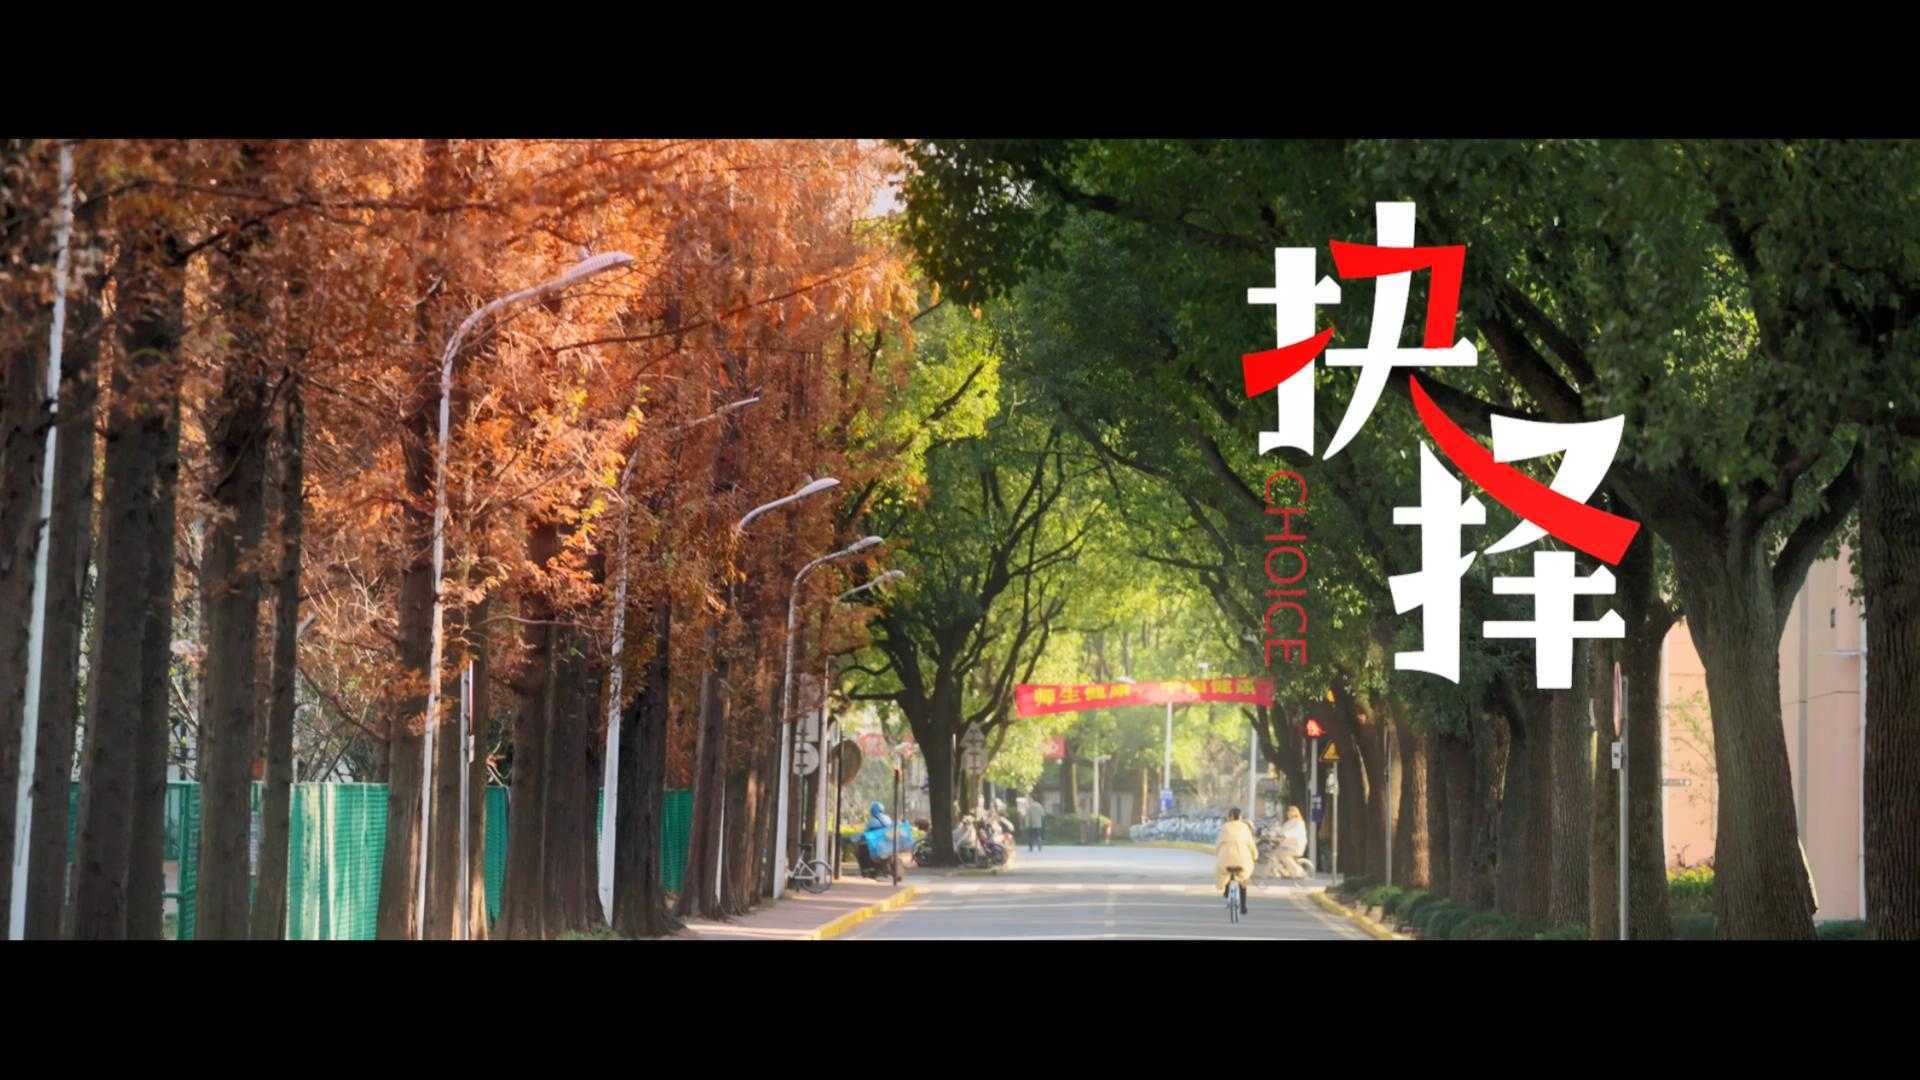 上海交通大学纪念钱学森诞辰110周年微电影《抉择》